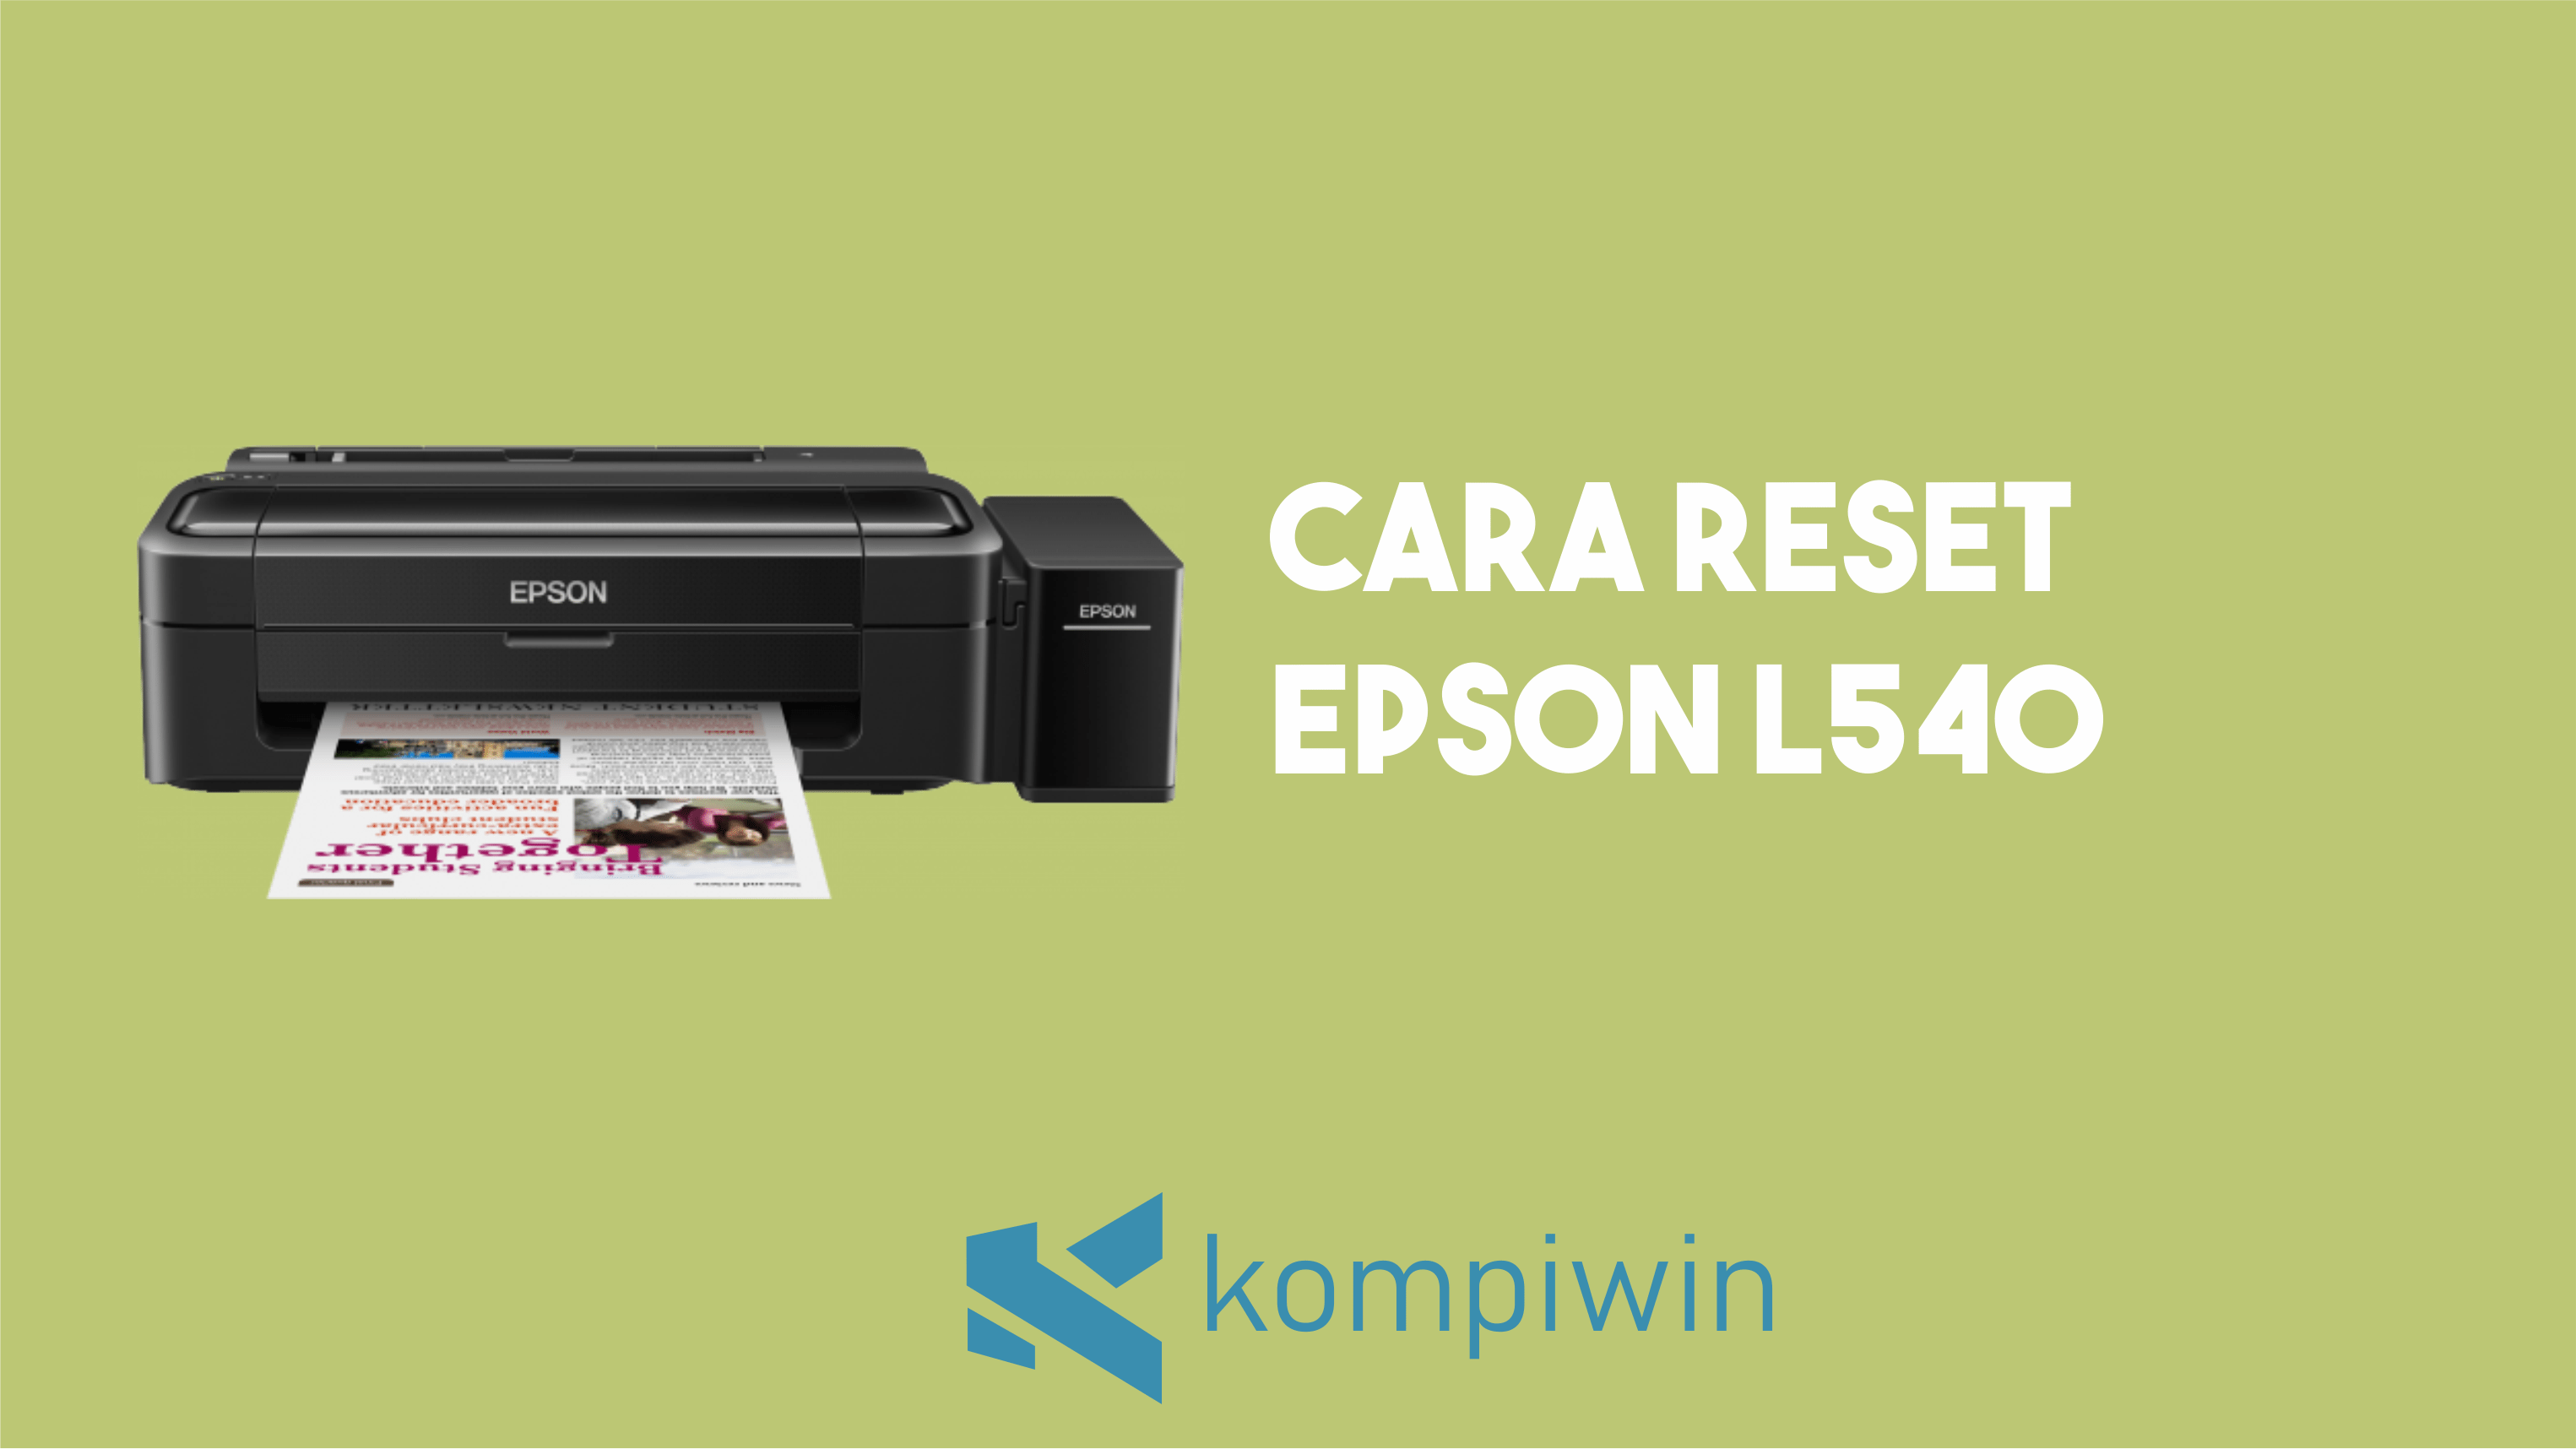 Cara Reset Epson L540